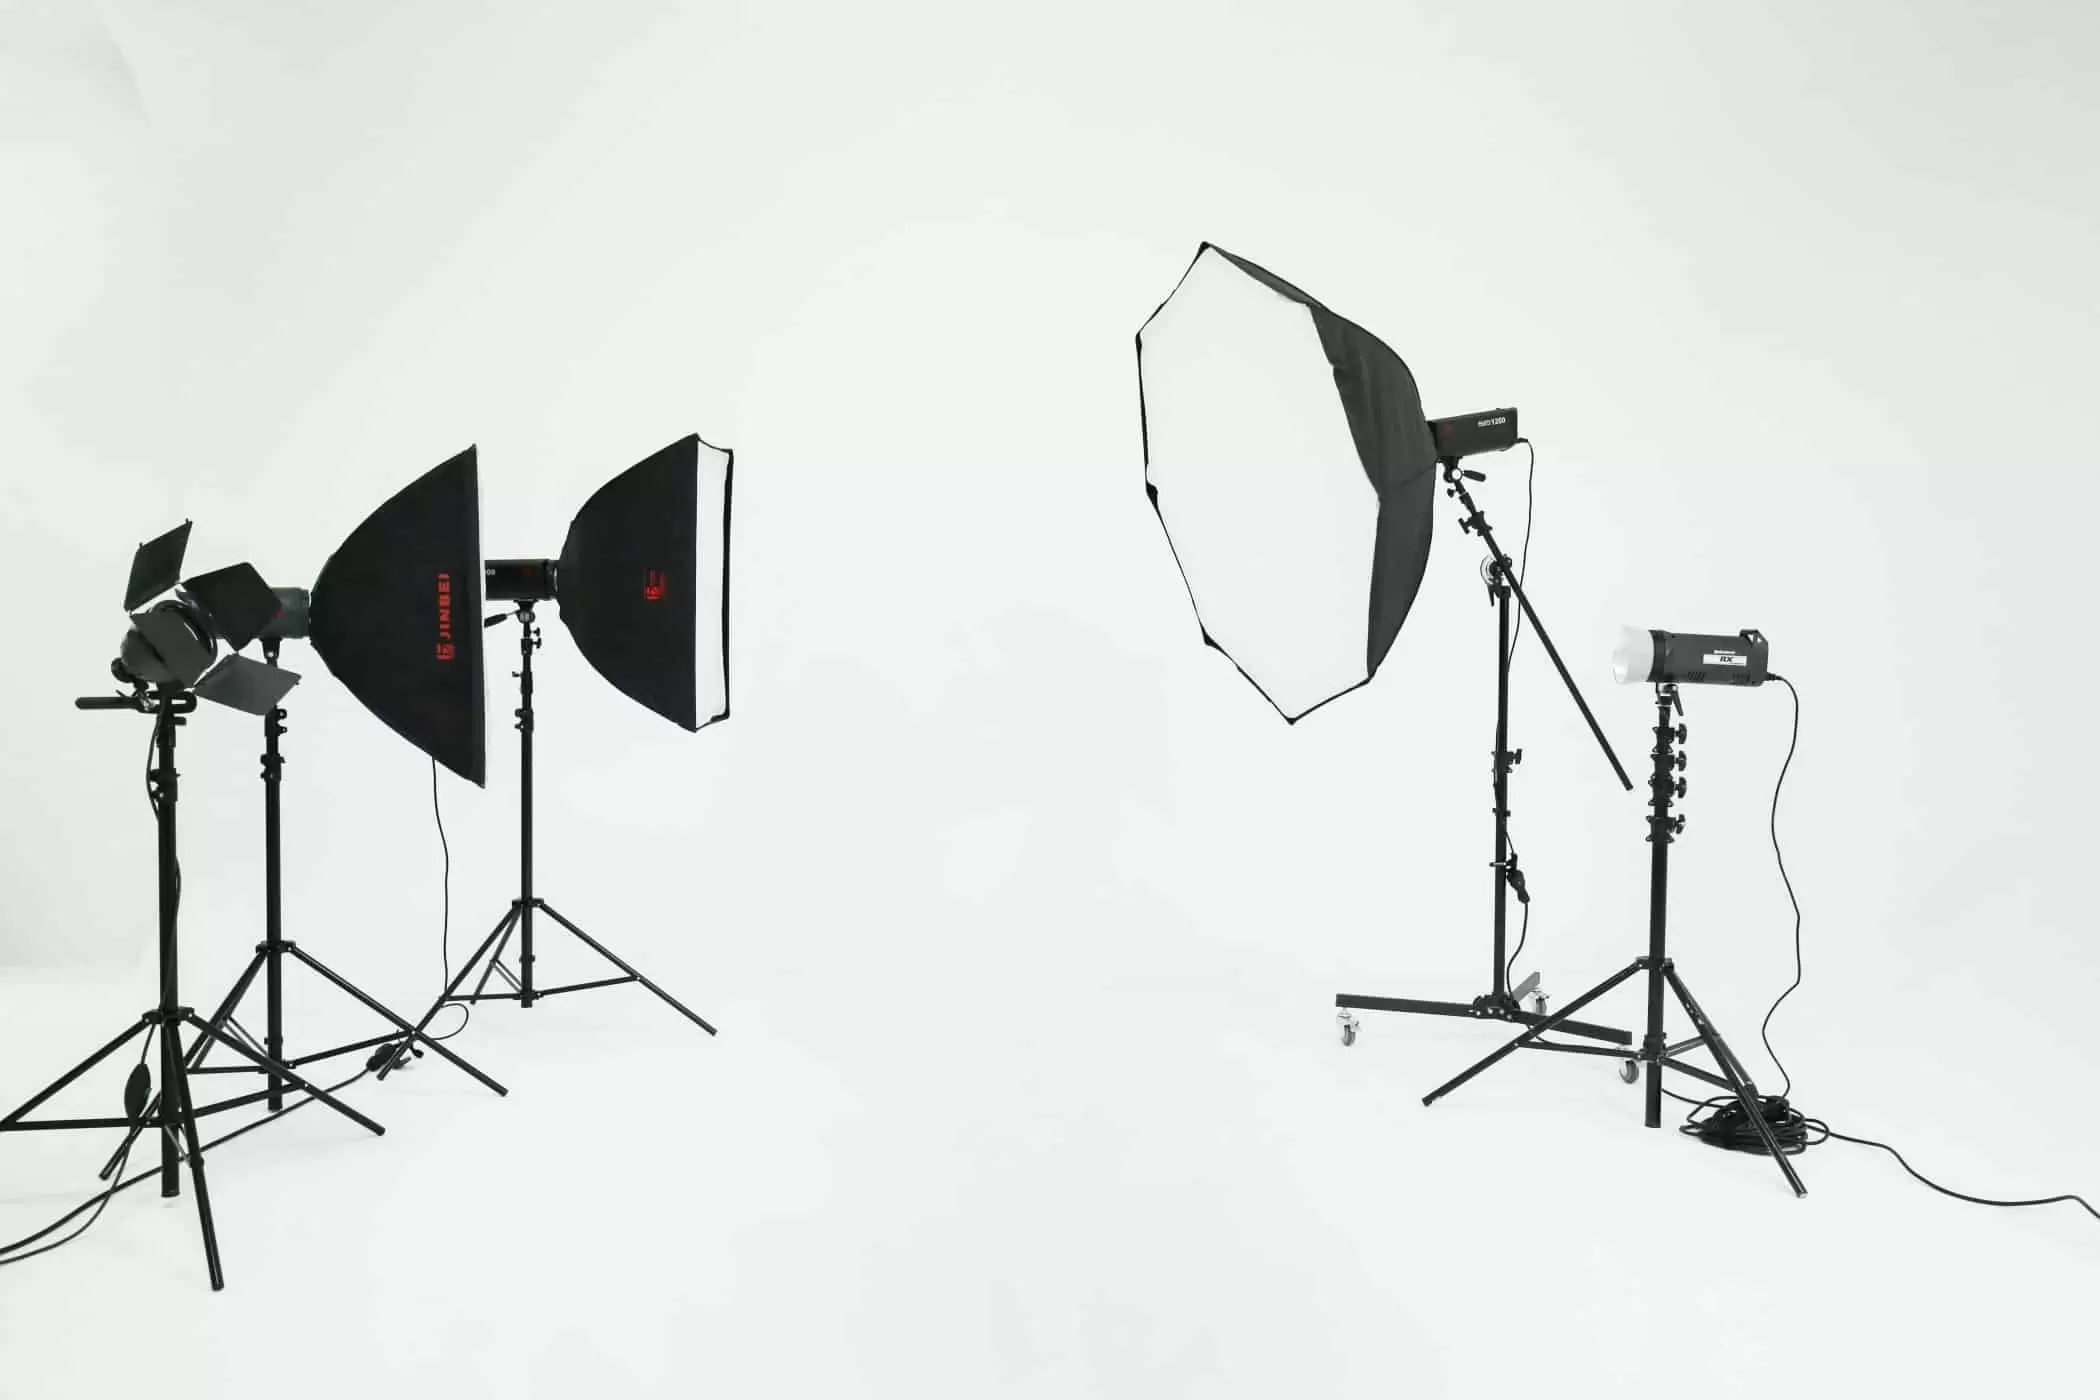 affitto-studio-fotografico-sala-pose-postazione-makeup-luci-per-servizi-fotografici-video-riprese (5)